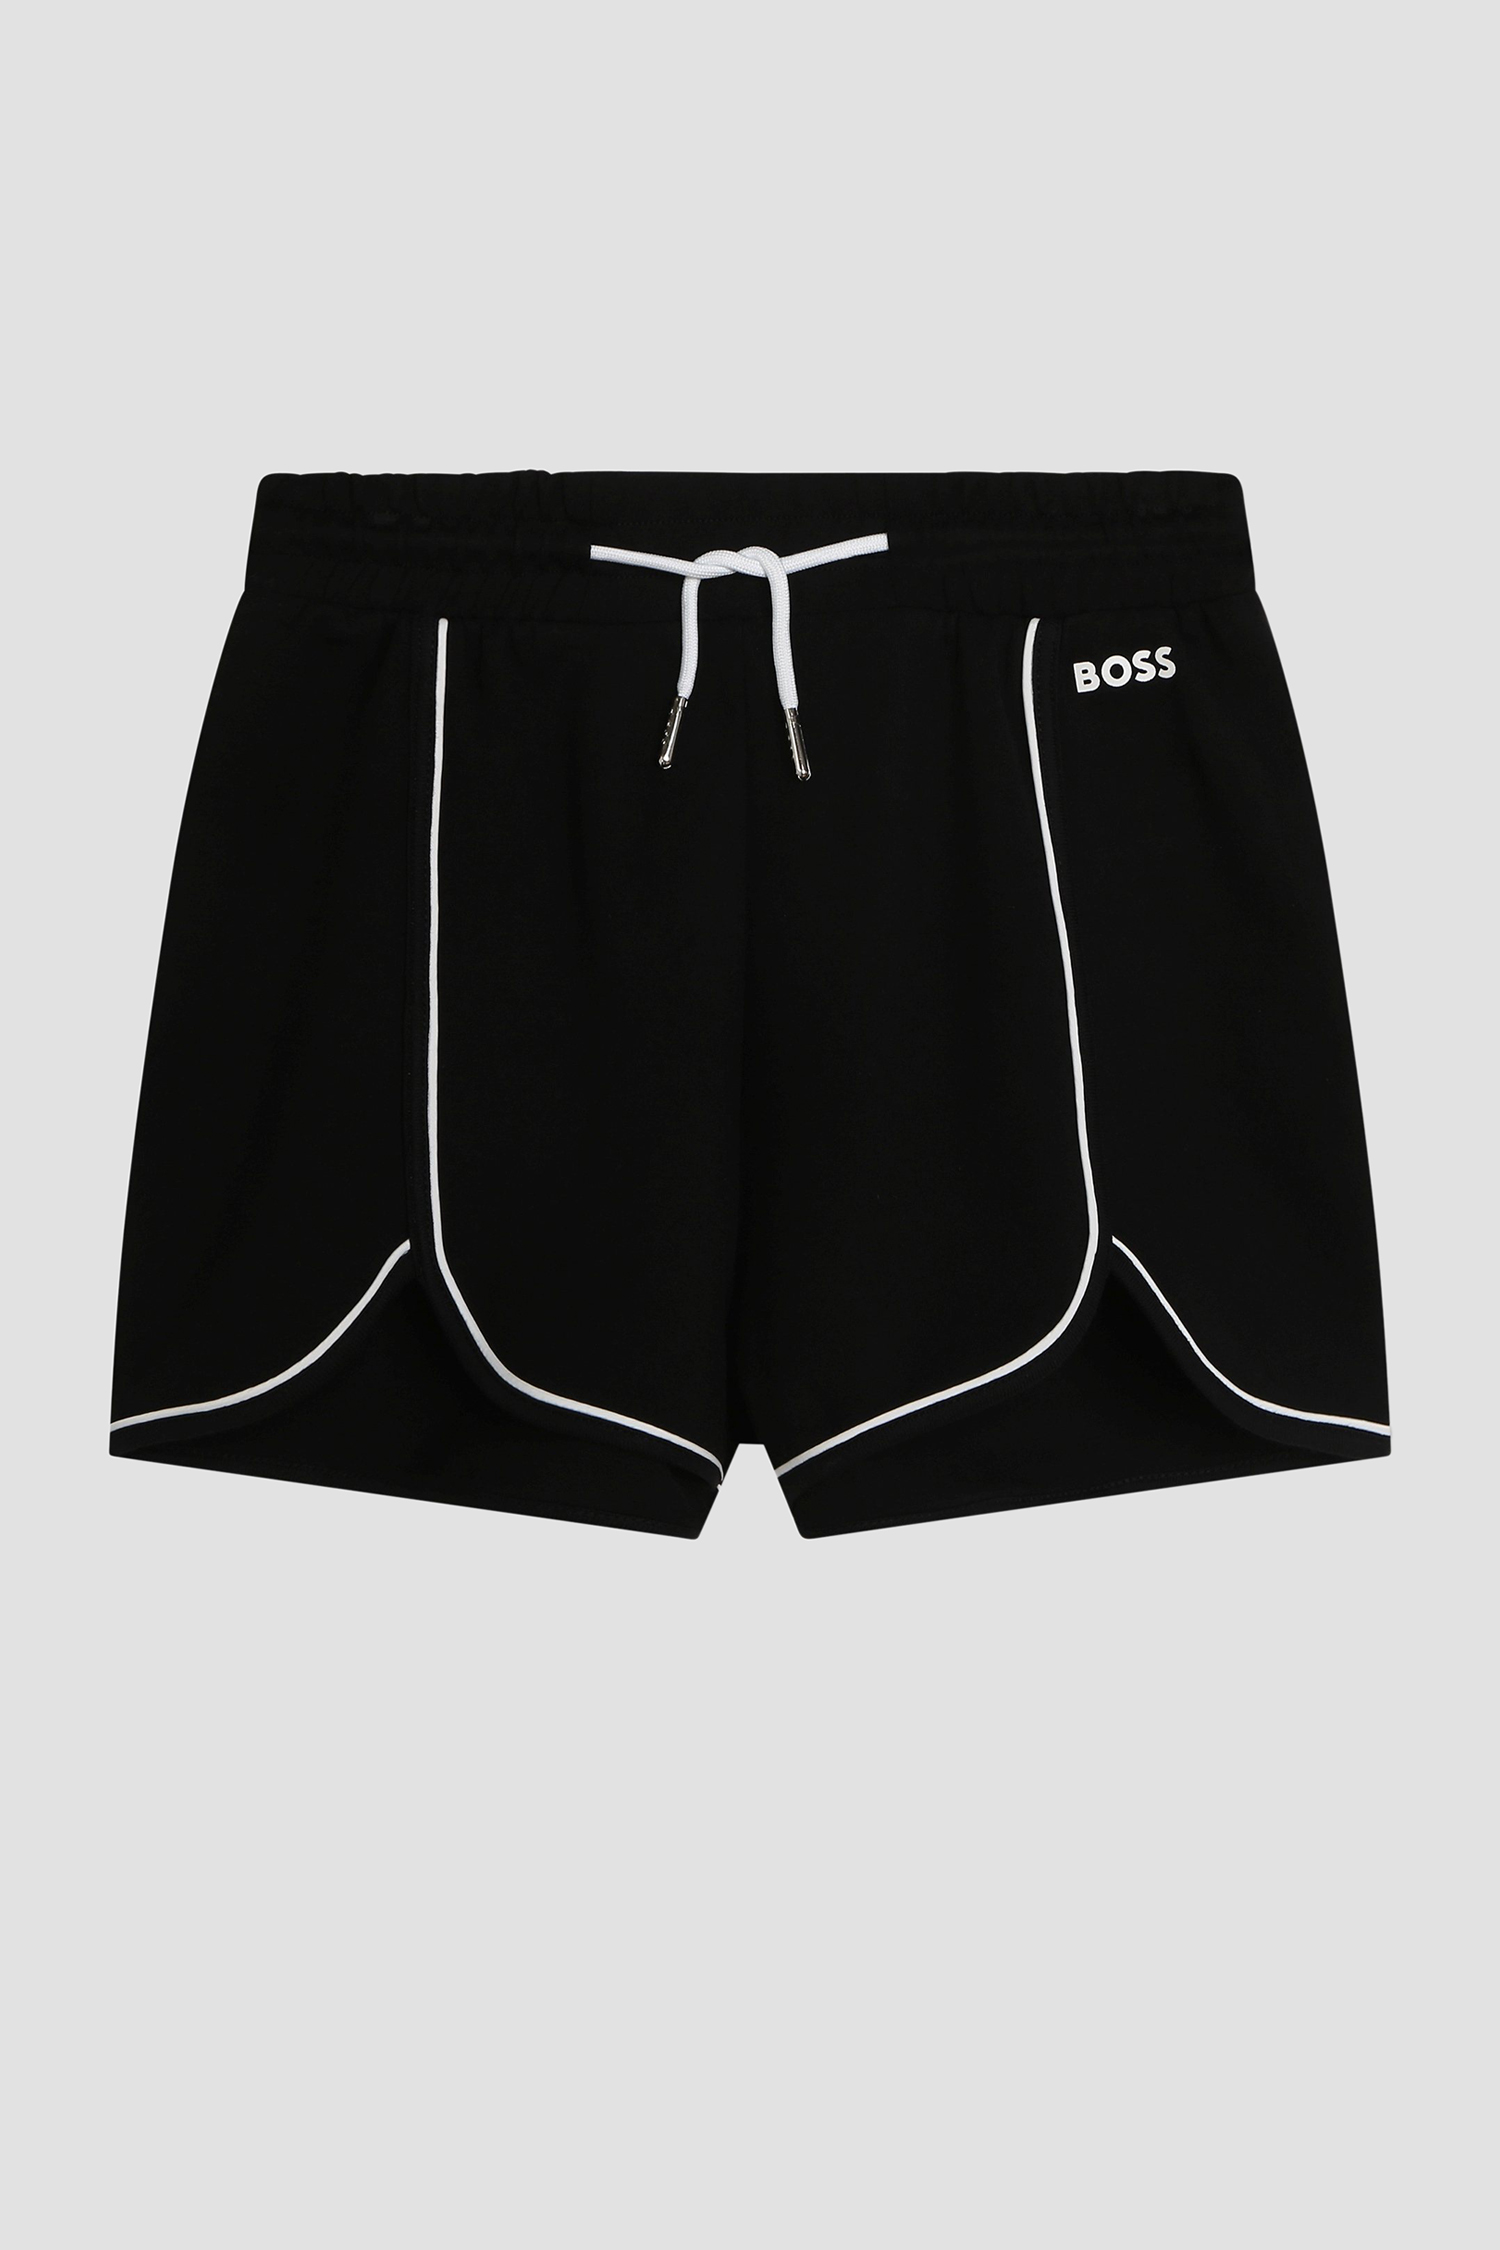 Детские черные шорты BOSS kids J50646;09B